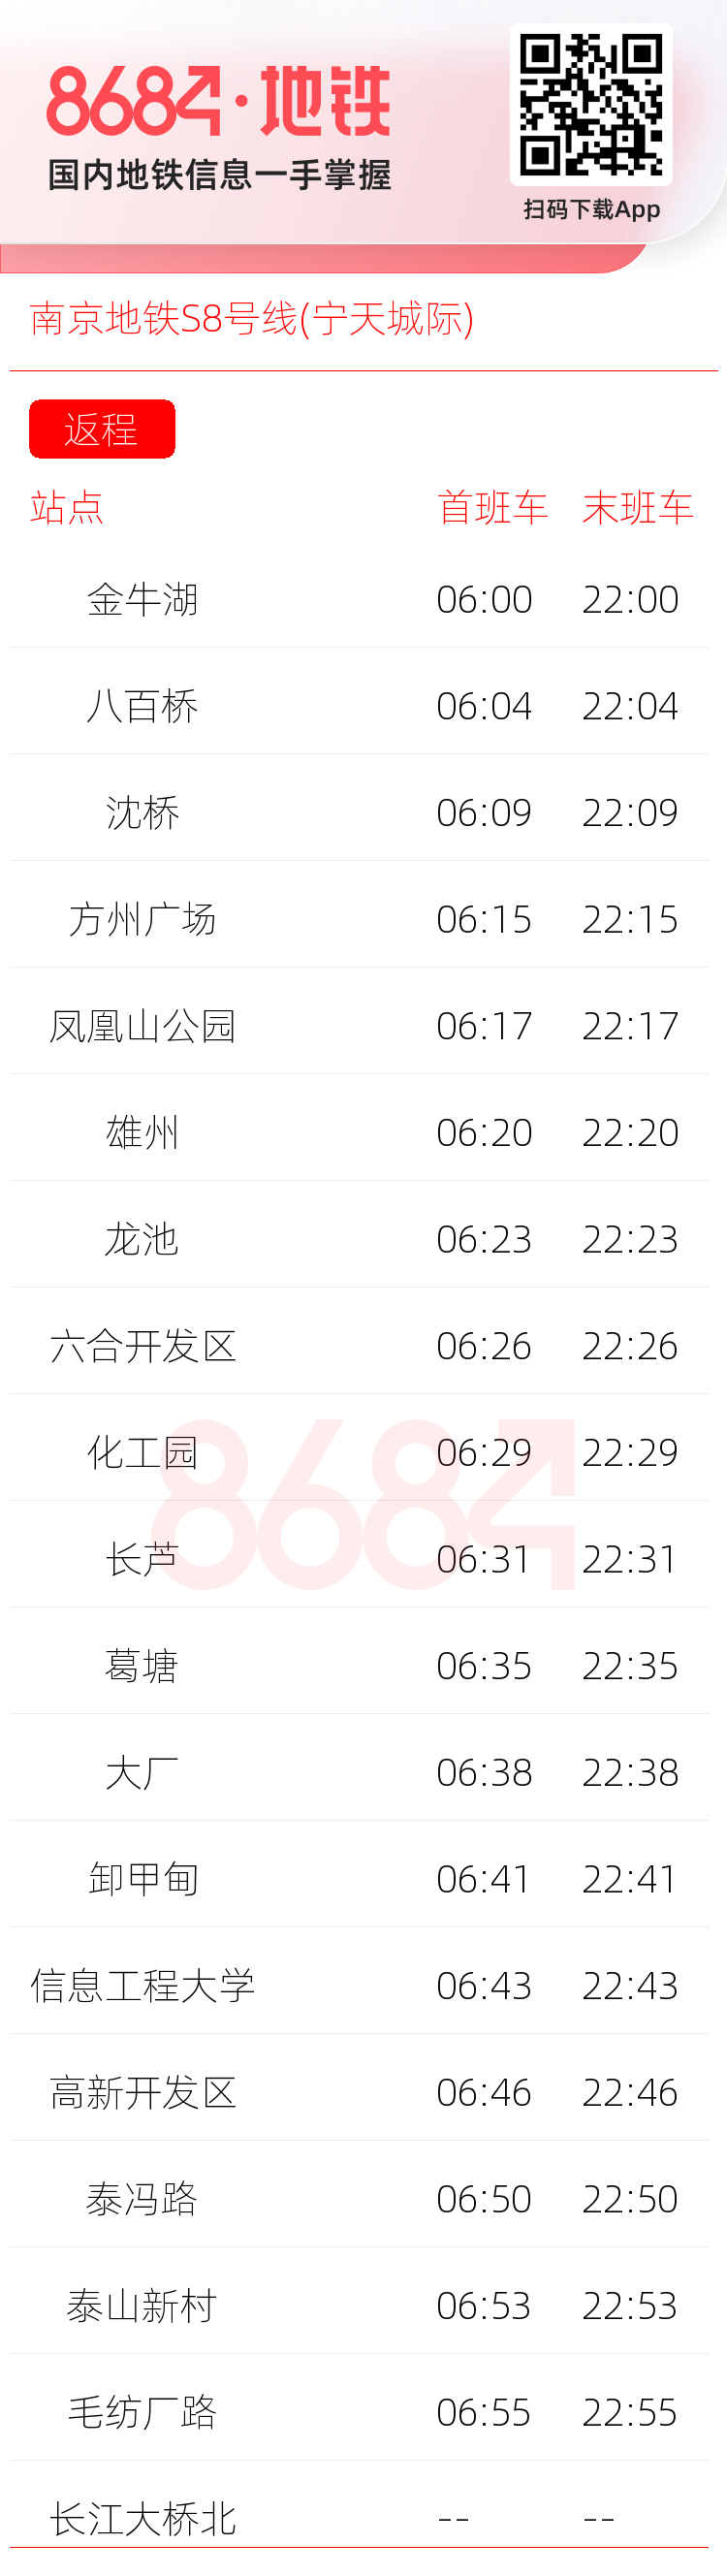 南京地铁S8号线(宁天城际)运营时间表